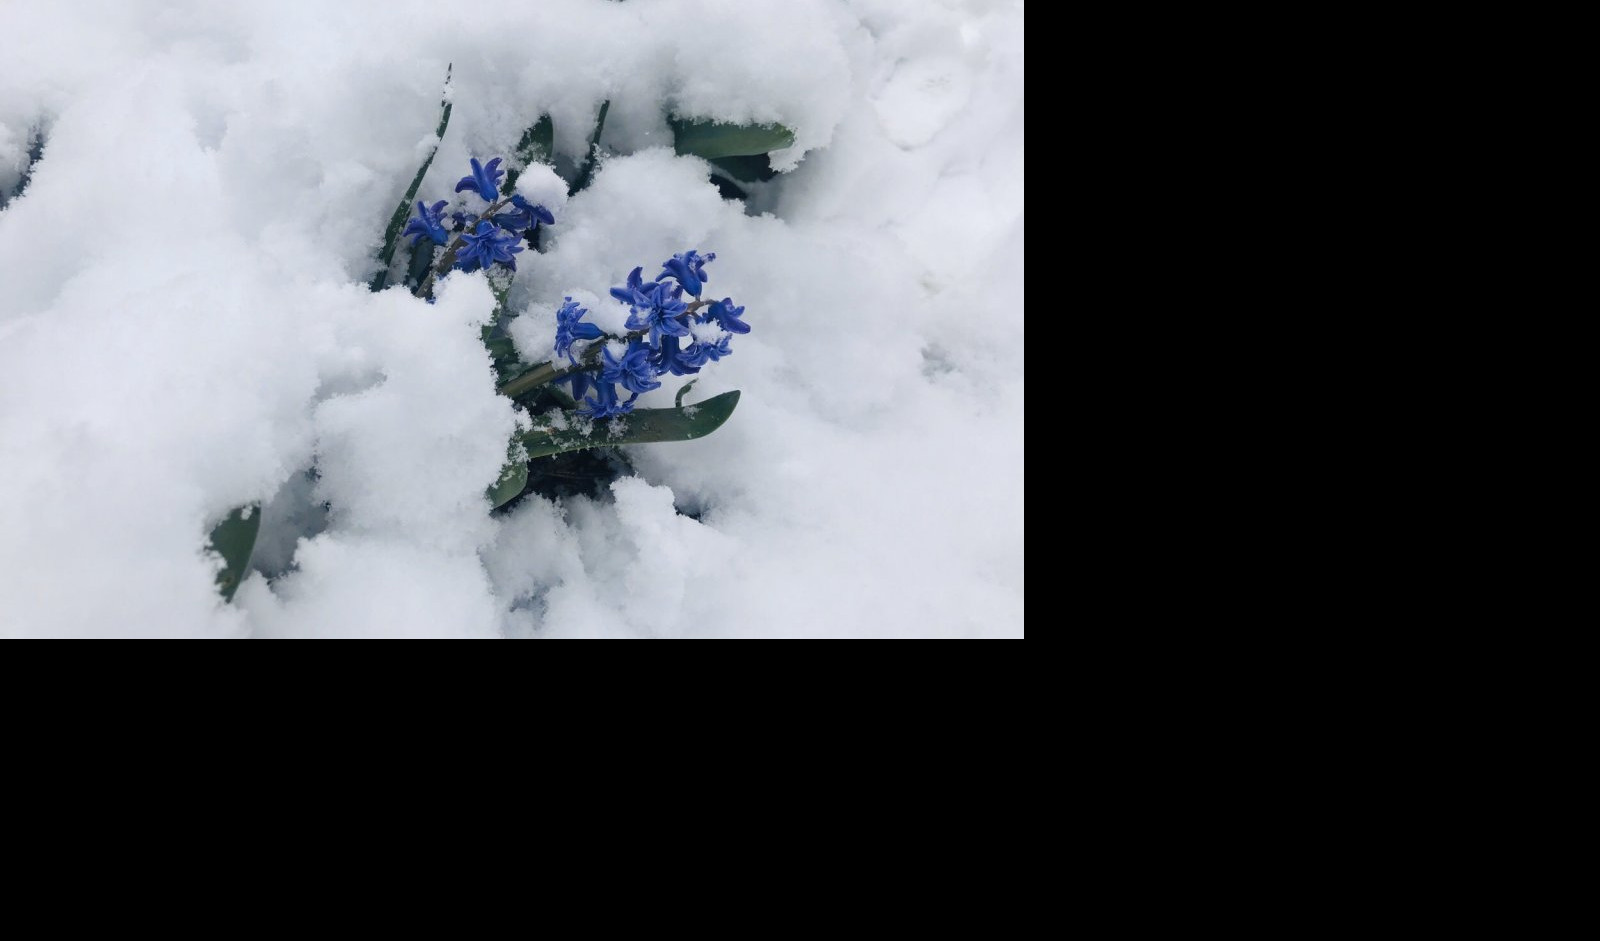 (VIDEO/FOTO) NIJE PRVOAPRILSKA ŠALA! Sneg zavejao Srbiju, nestvarni prizori zimske idile!